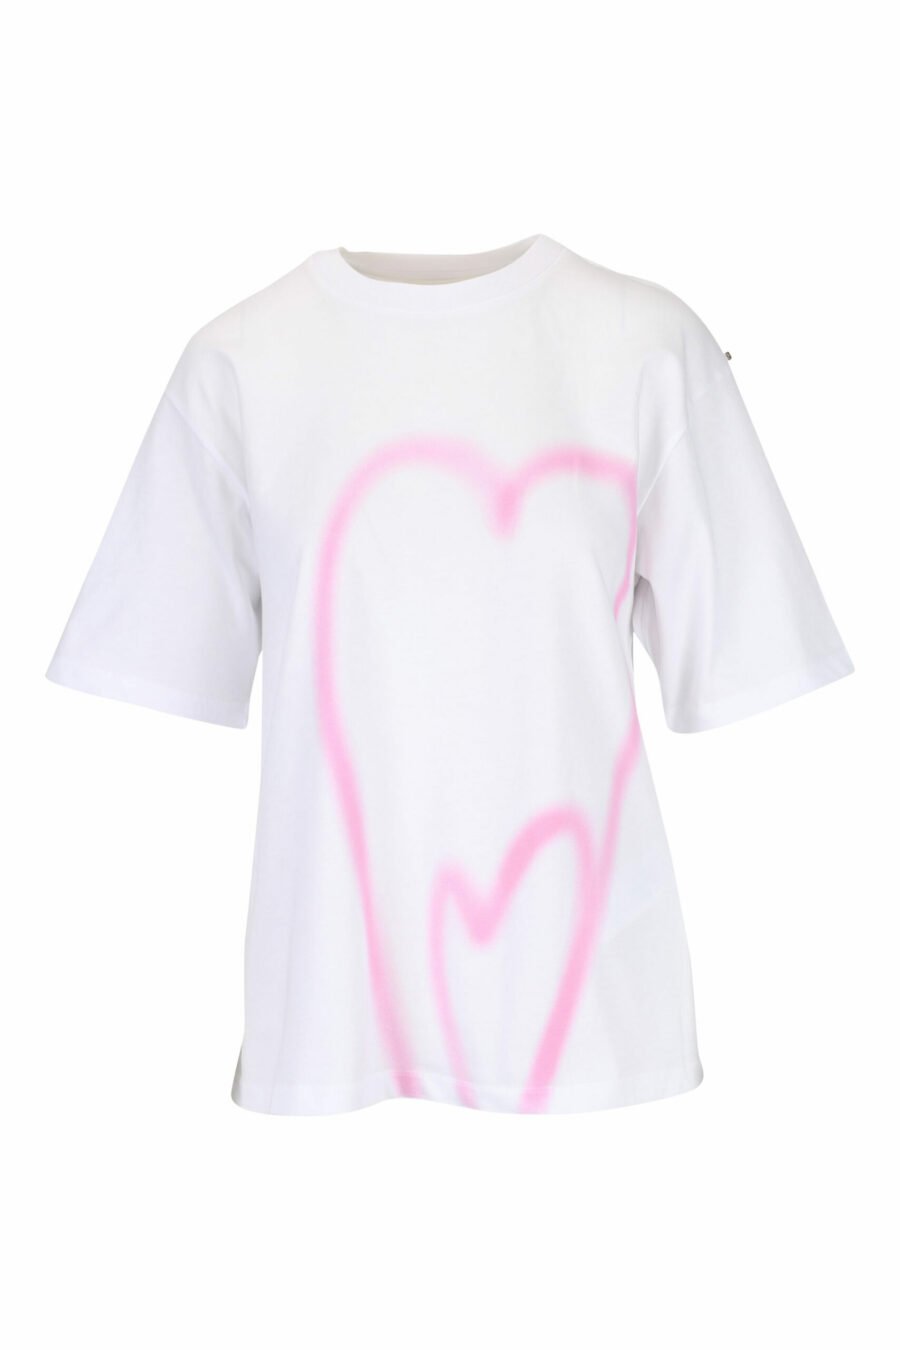 T-shirt branca com estampado de corações - 29710541060133